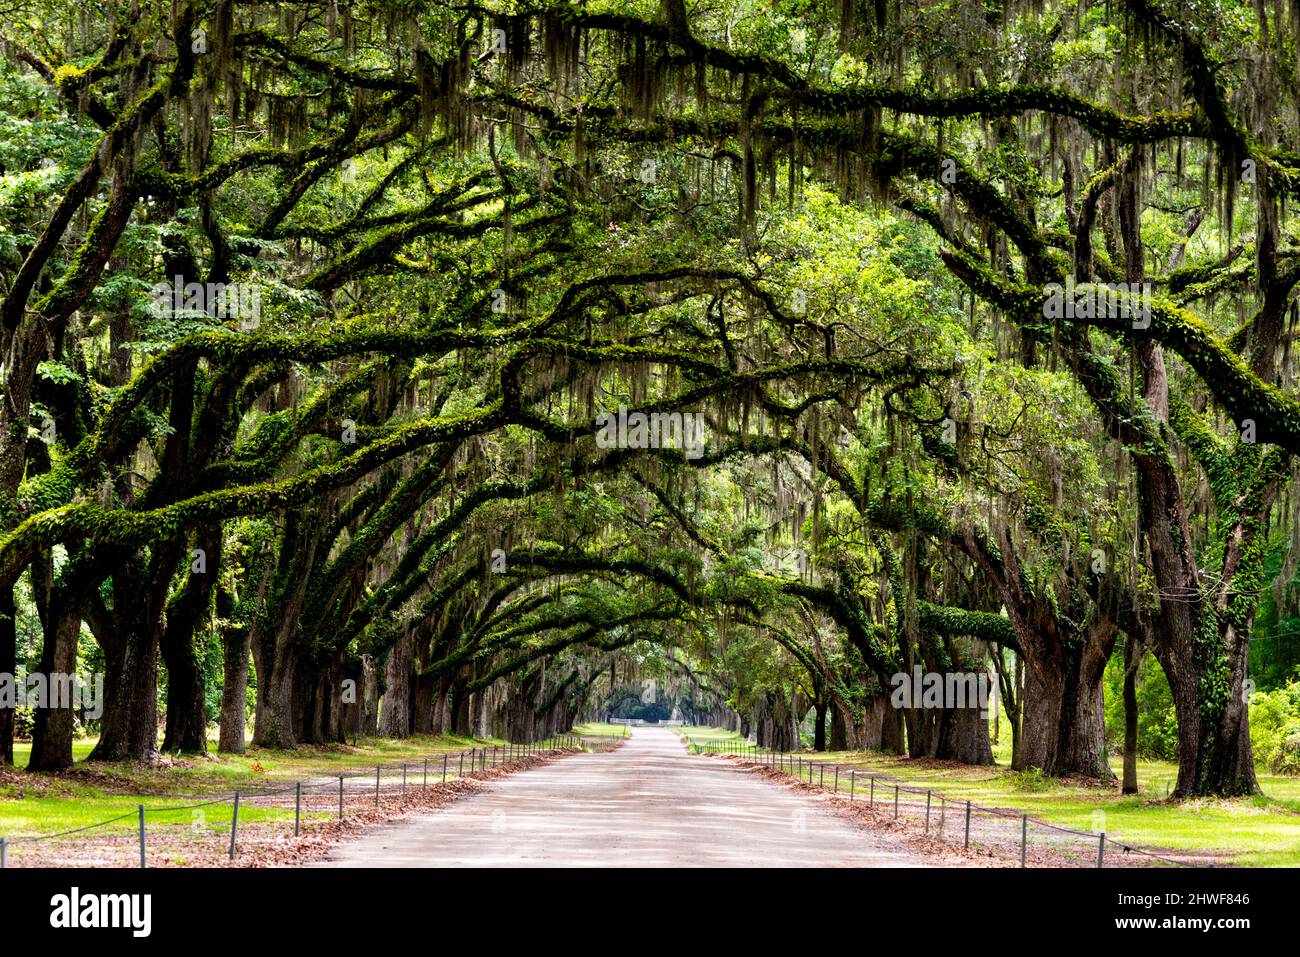 Wormsloe Historic Site in der Nähe von Savannah ist eine atemberaubende, von Eichen gesäumte Allee. Stockfoto